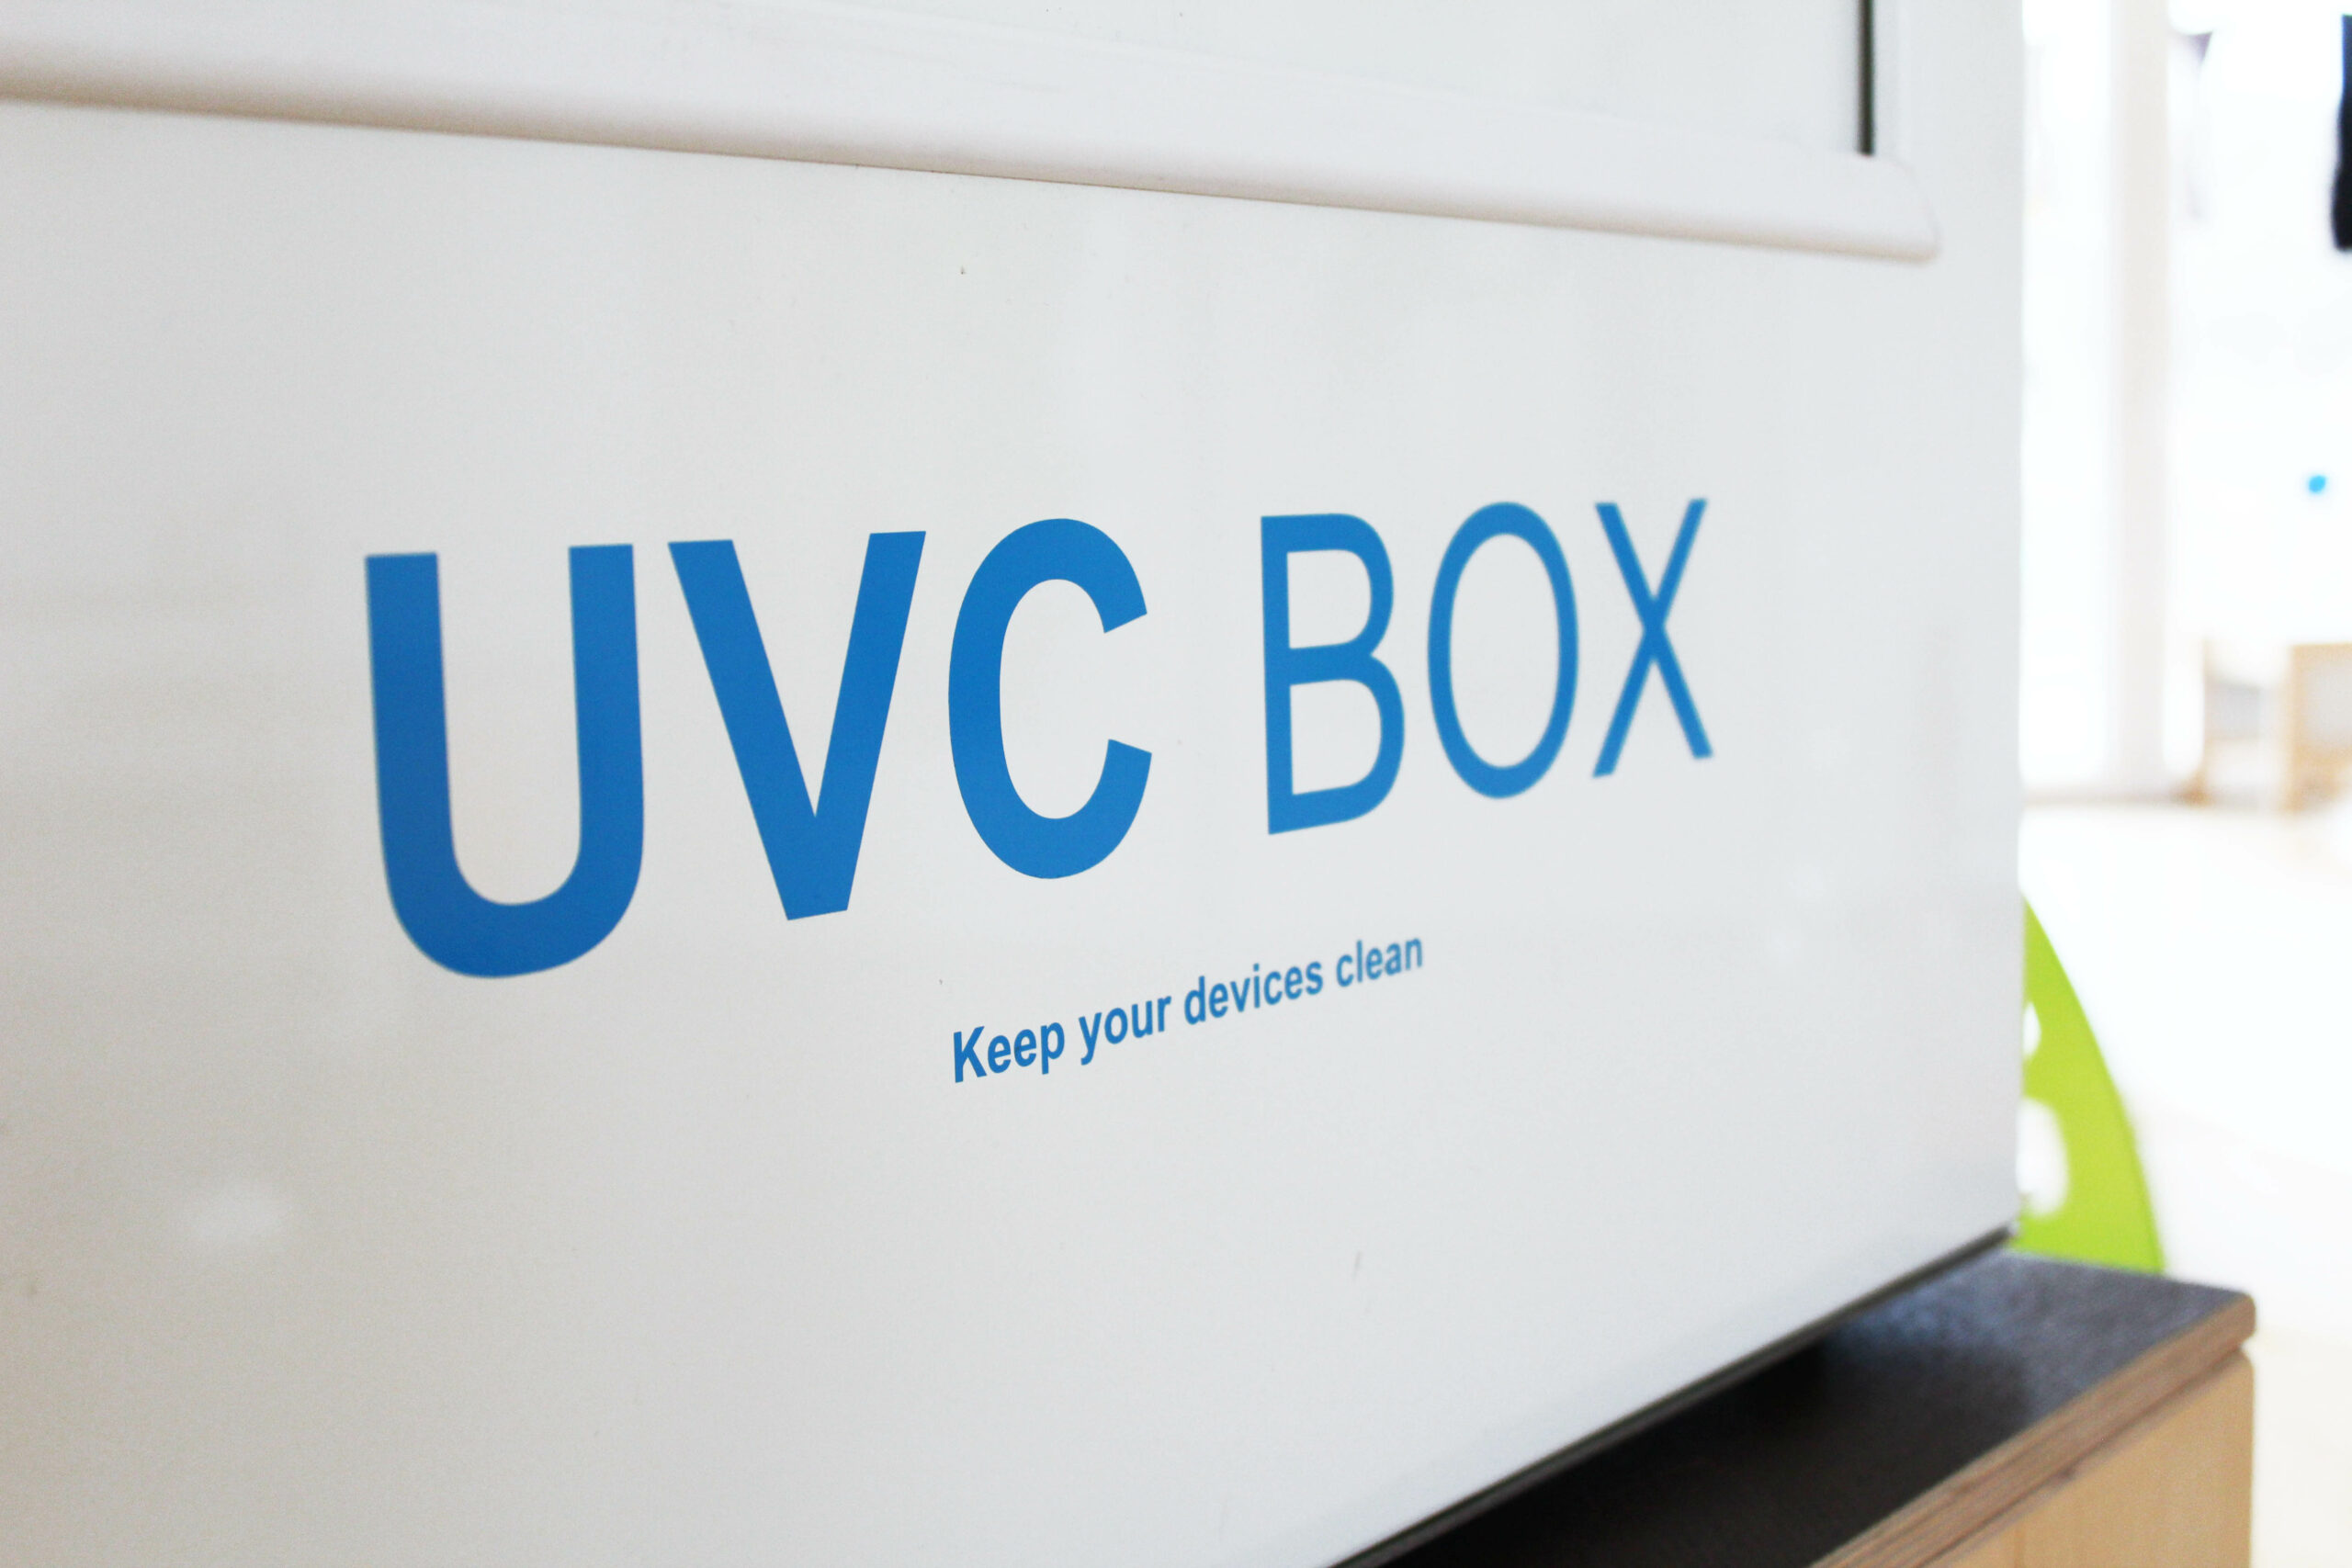 UVC Reinigungsbox, MEDER CommTech GmbH